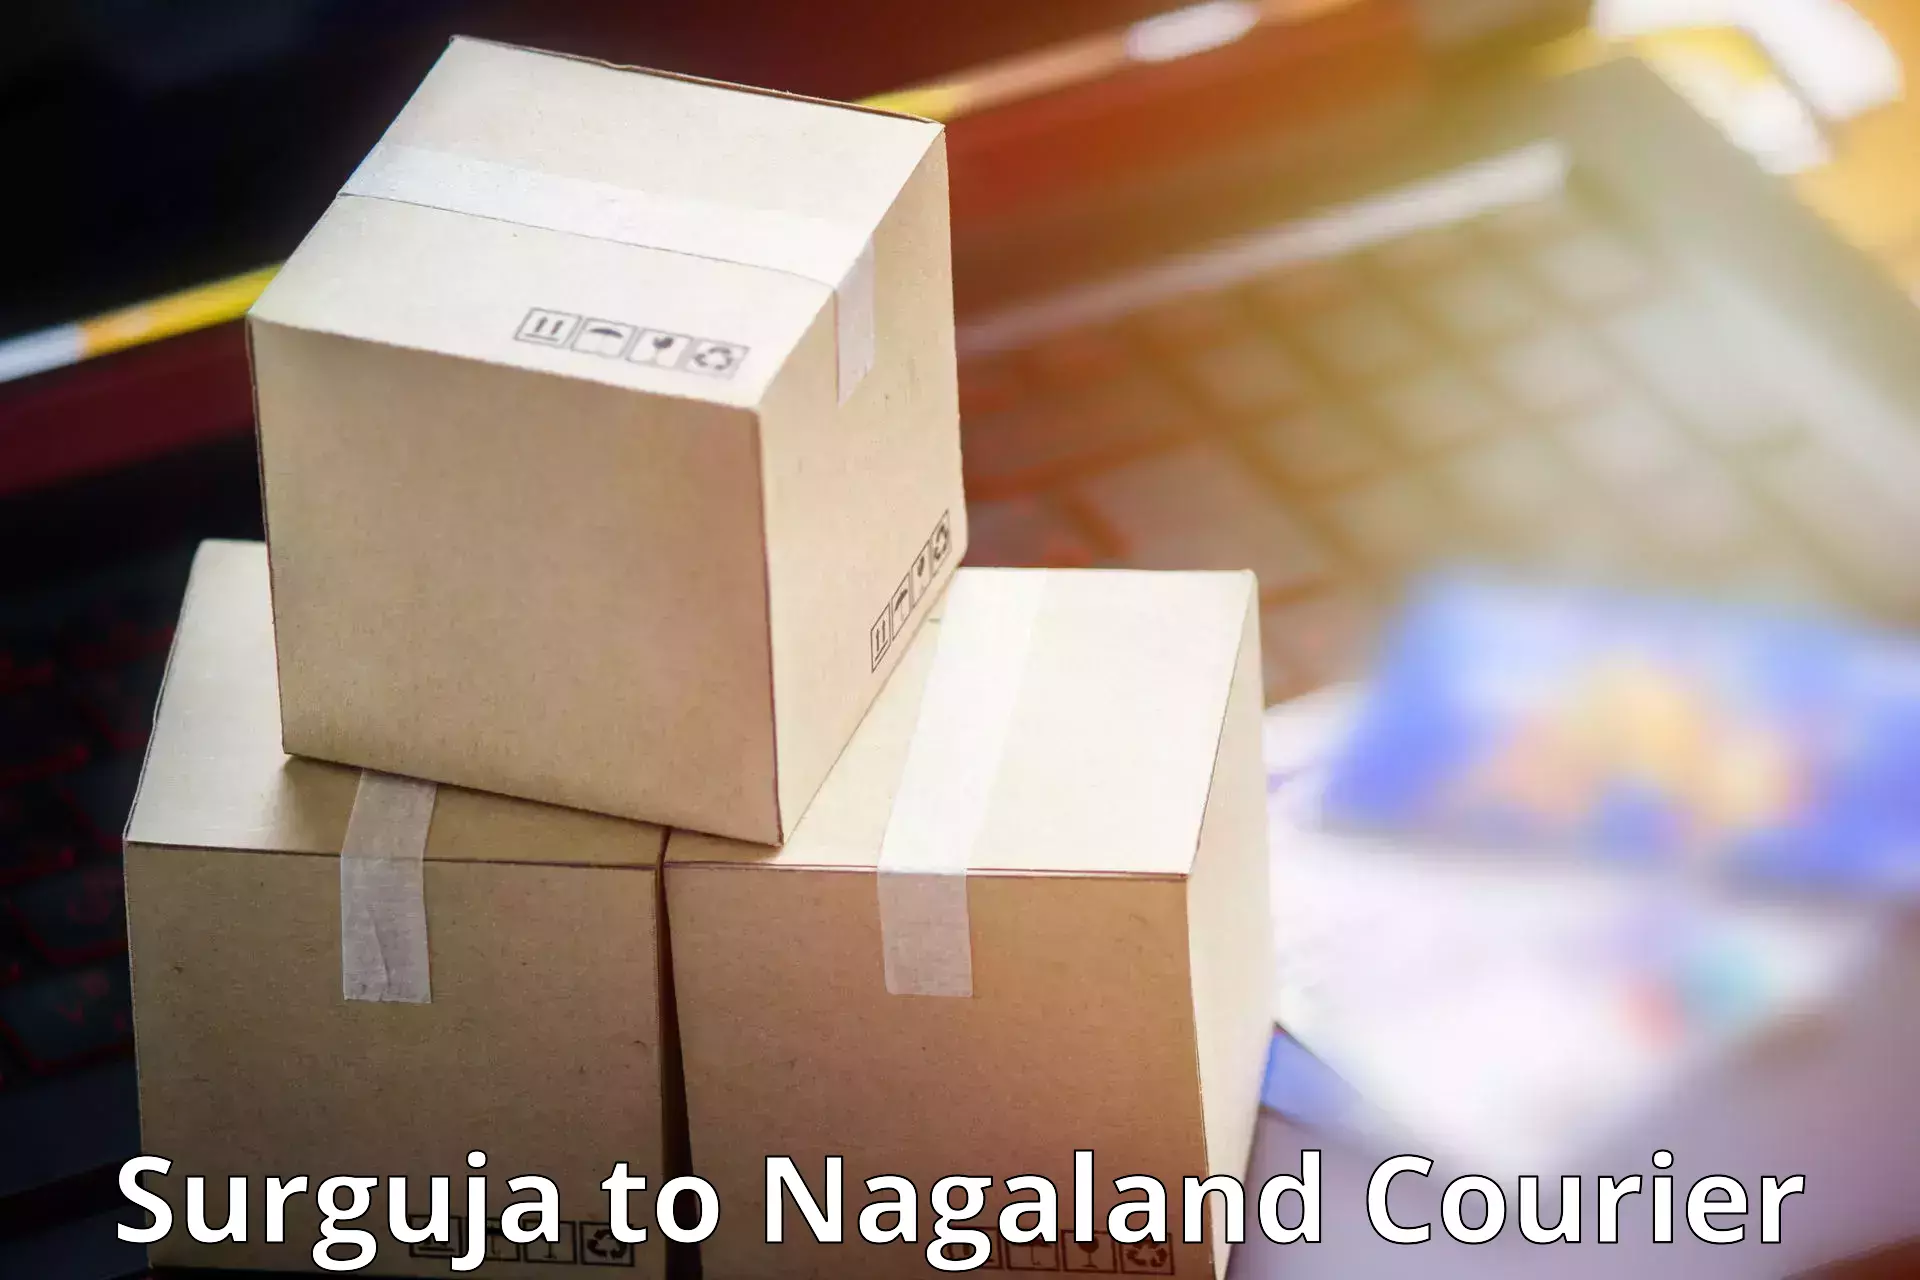 Affordable parcel service Surguja to Dimapur